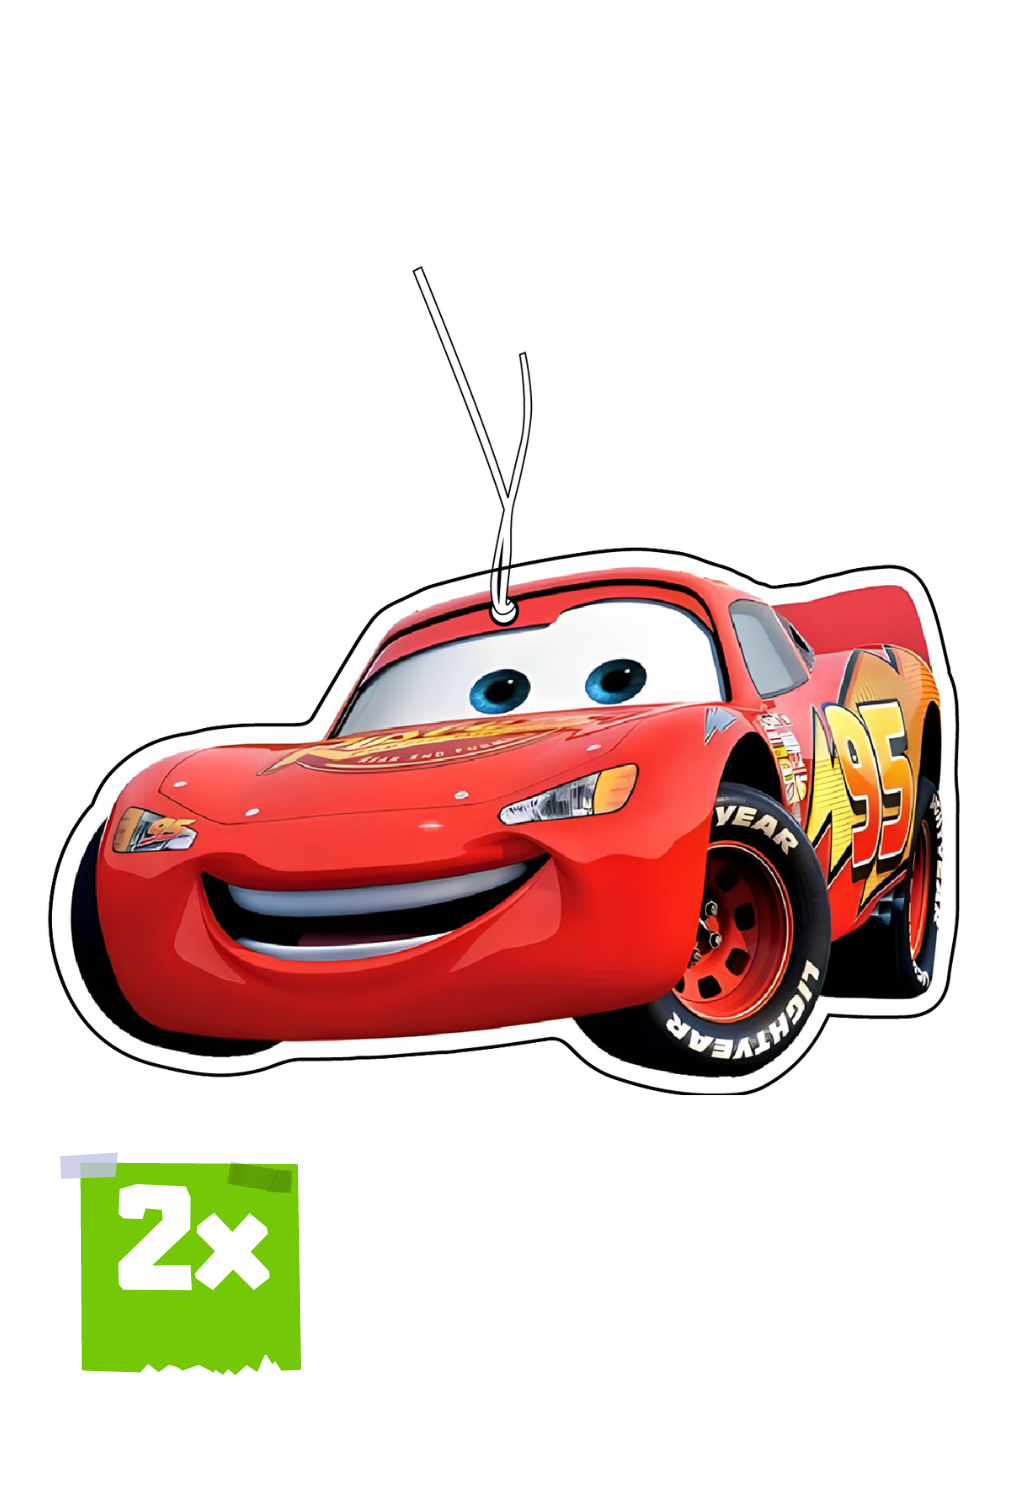 2x Stitch Duftbaum / Lufterfrischer Weihnachten Auto Duft Disney